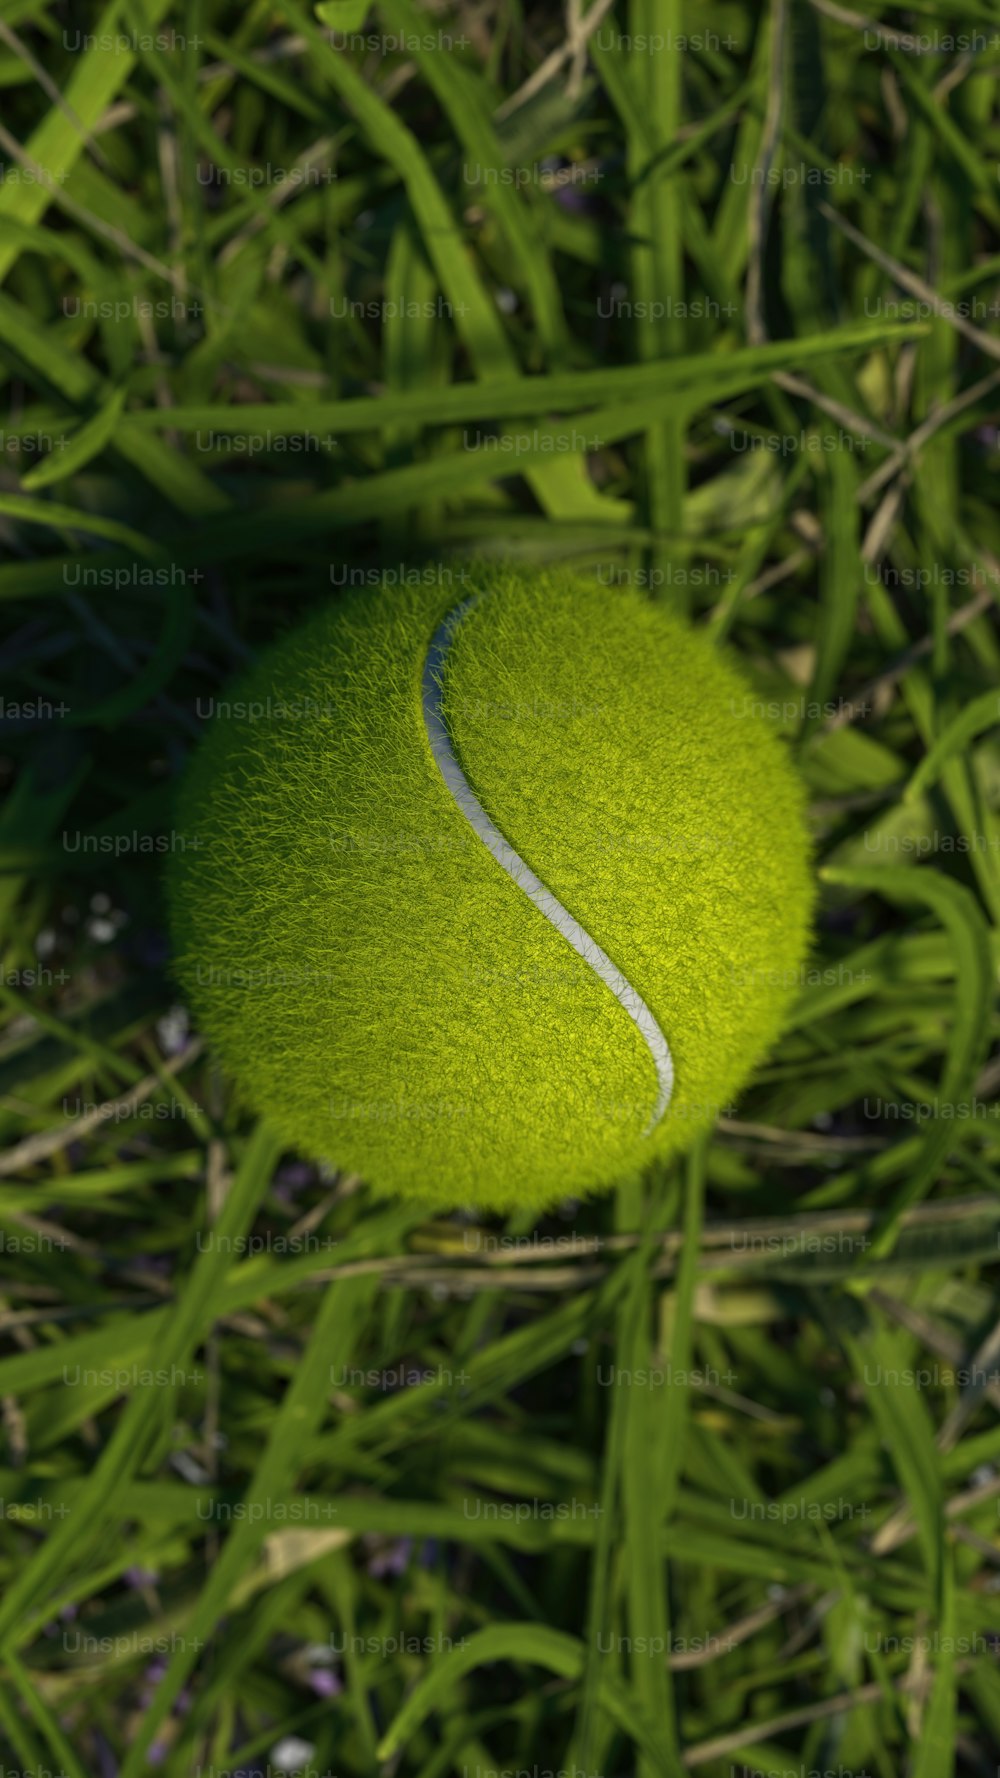 une balle de tennis posée sur un terrain verdoyant